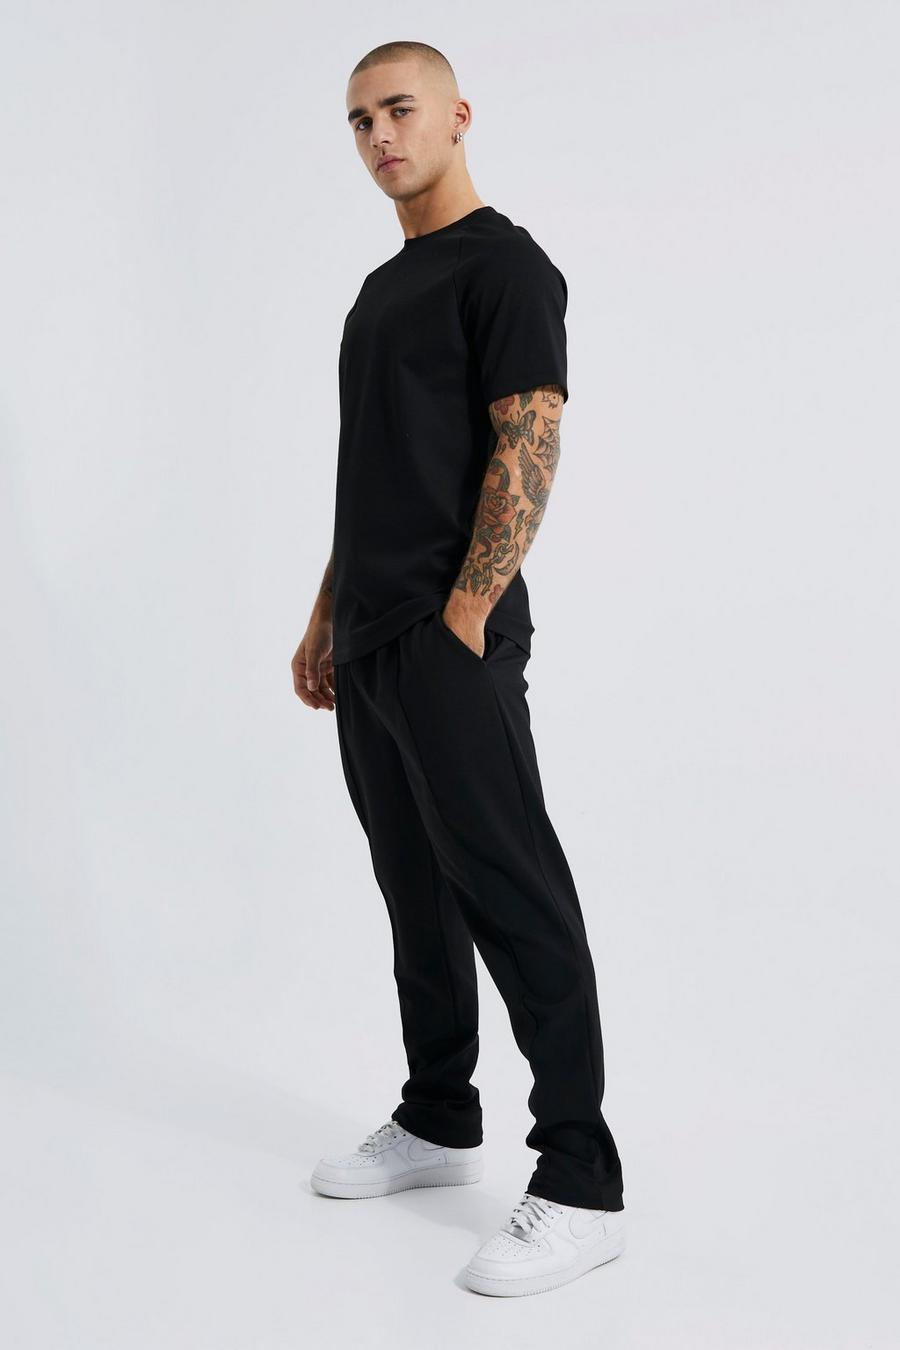 שחור negro סט אלגנטי של מכנסי ריצה עם קפלים וטישרט